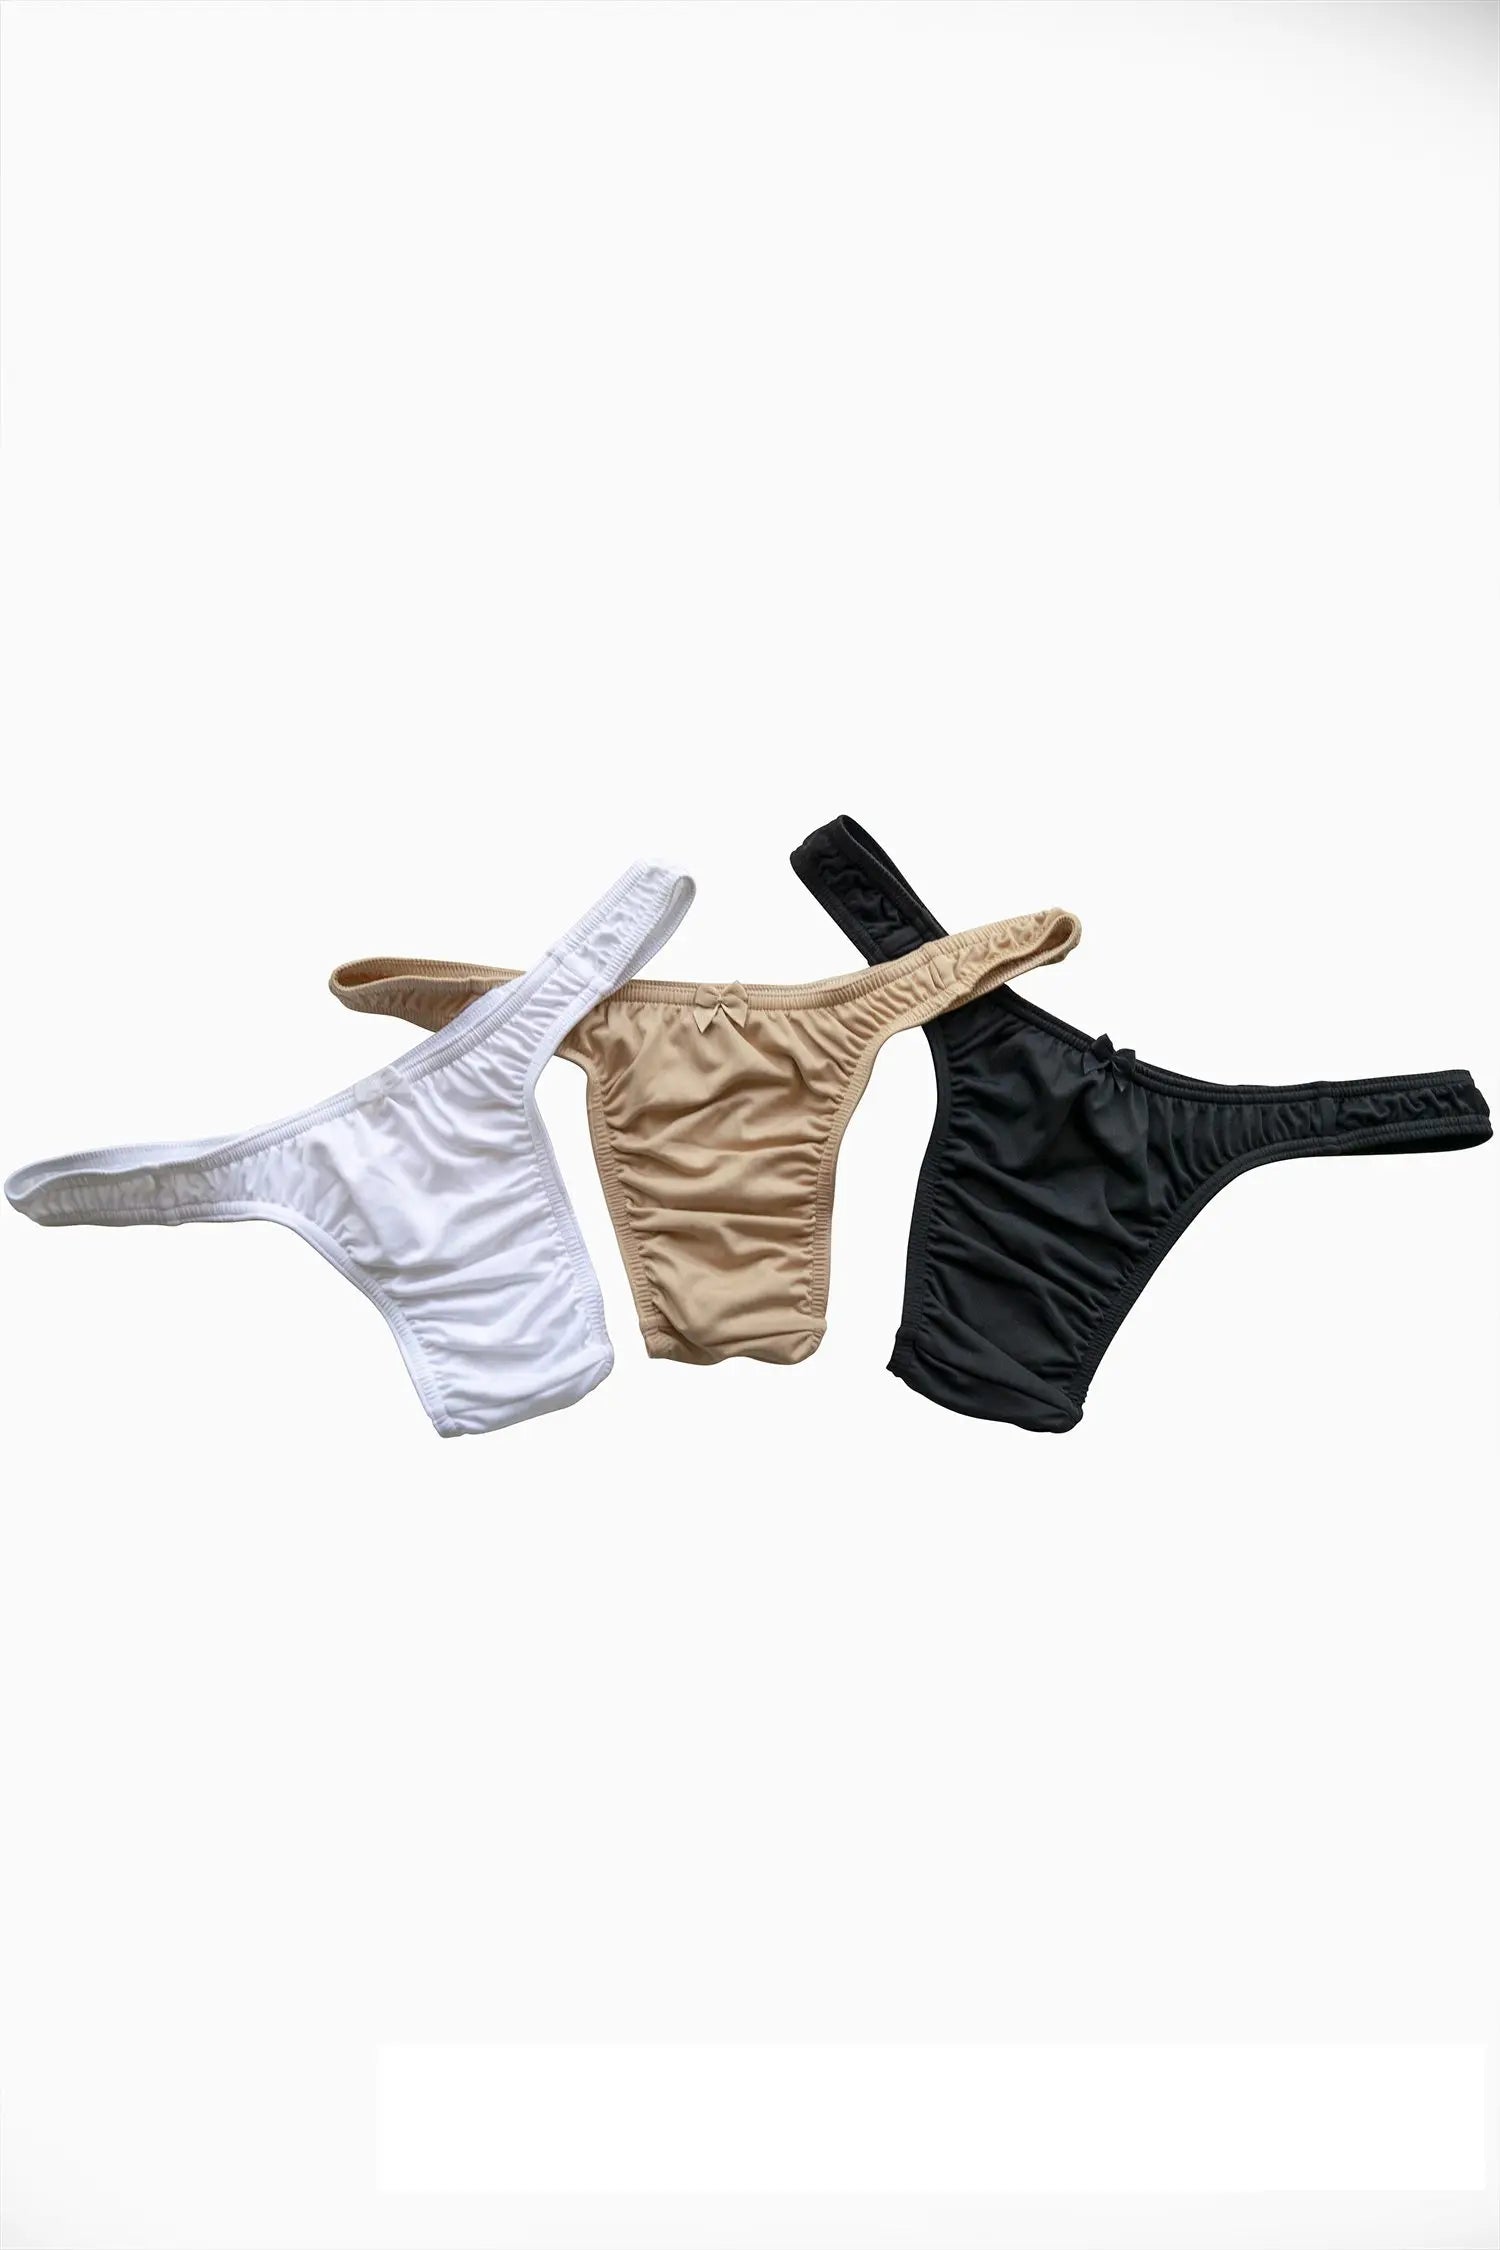 Mini Brief Venus - Women Underwear